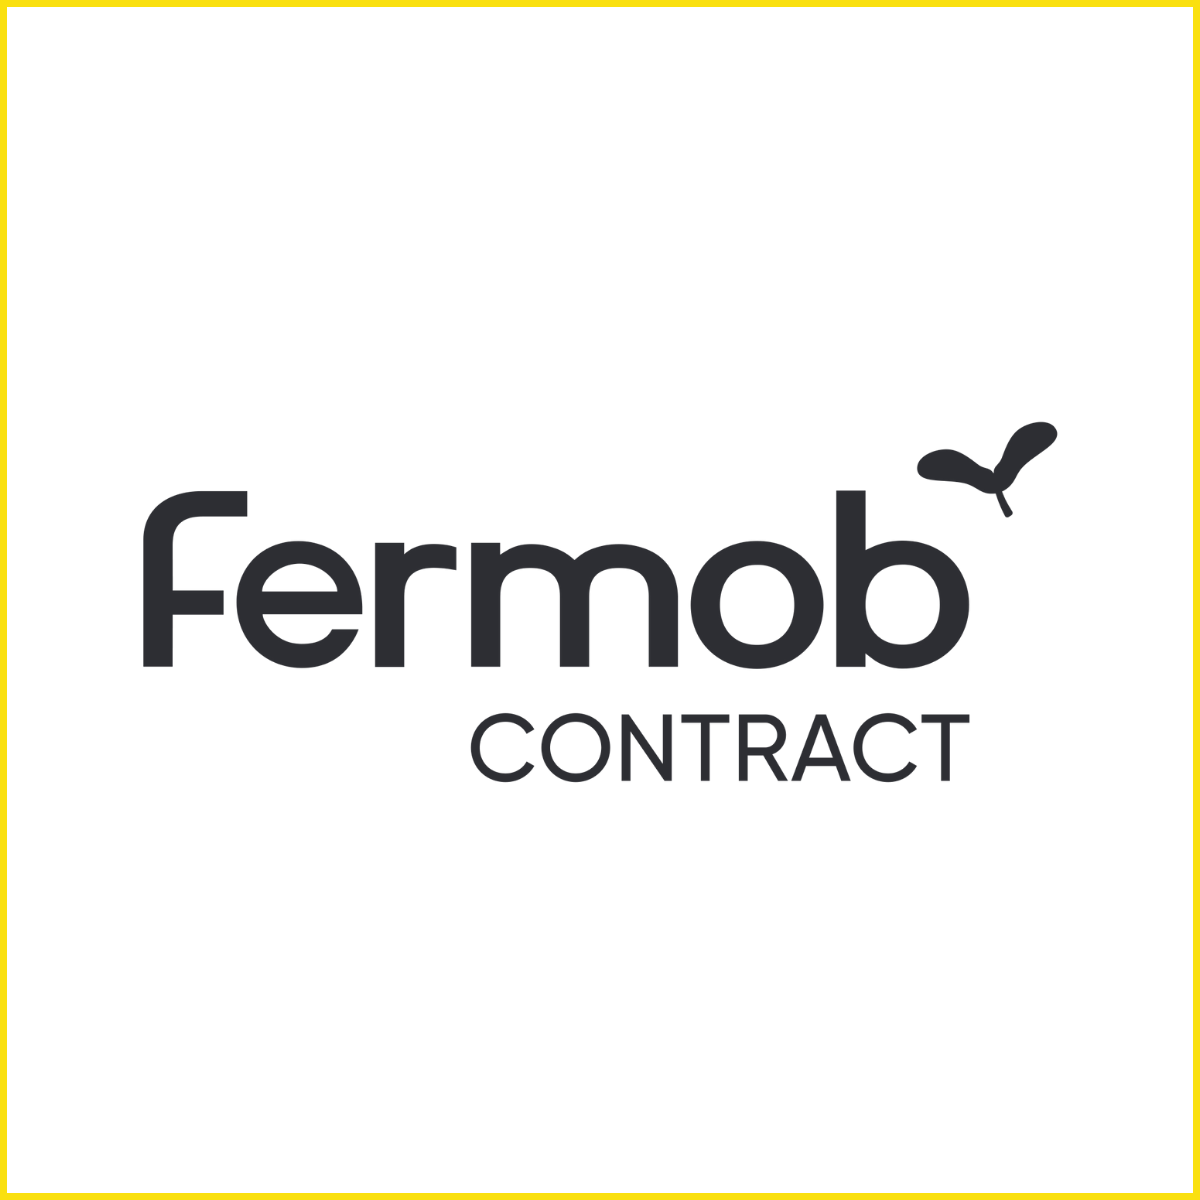 Fermob Contract - Metrixx